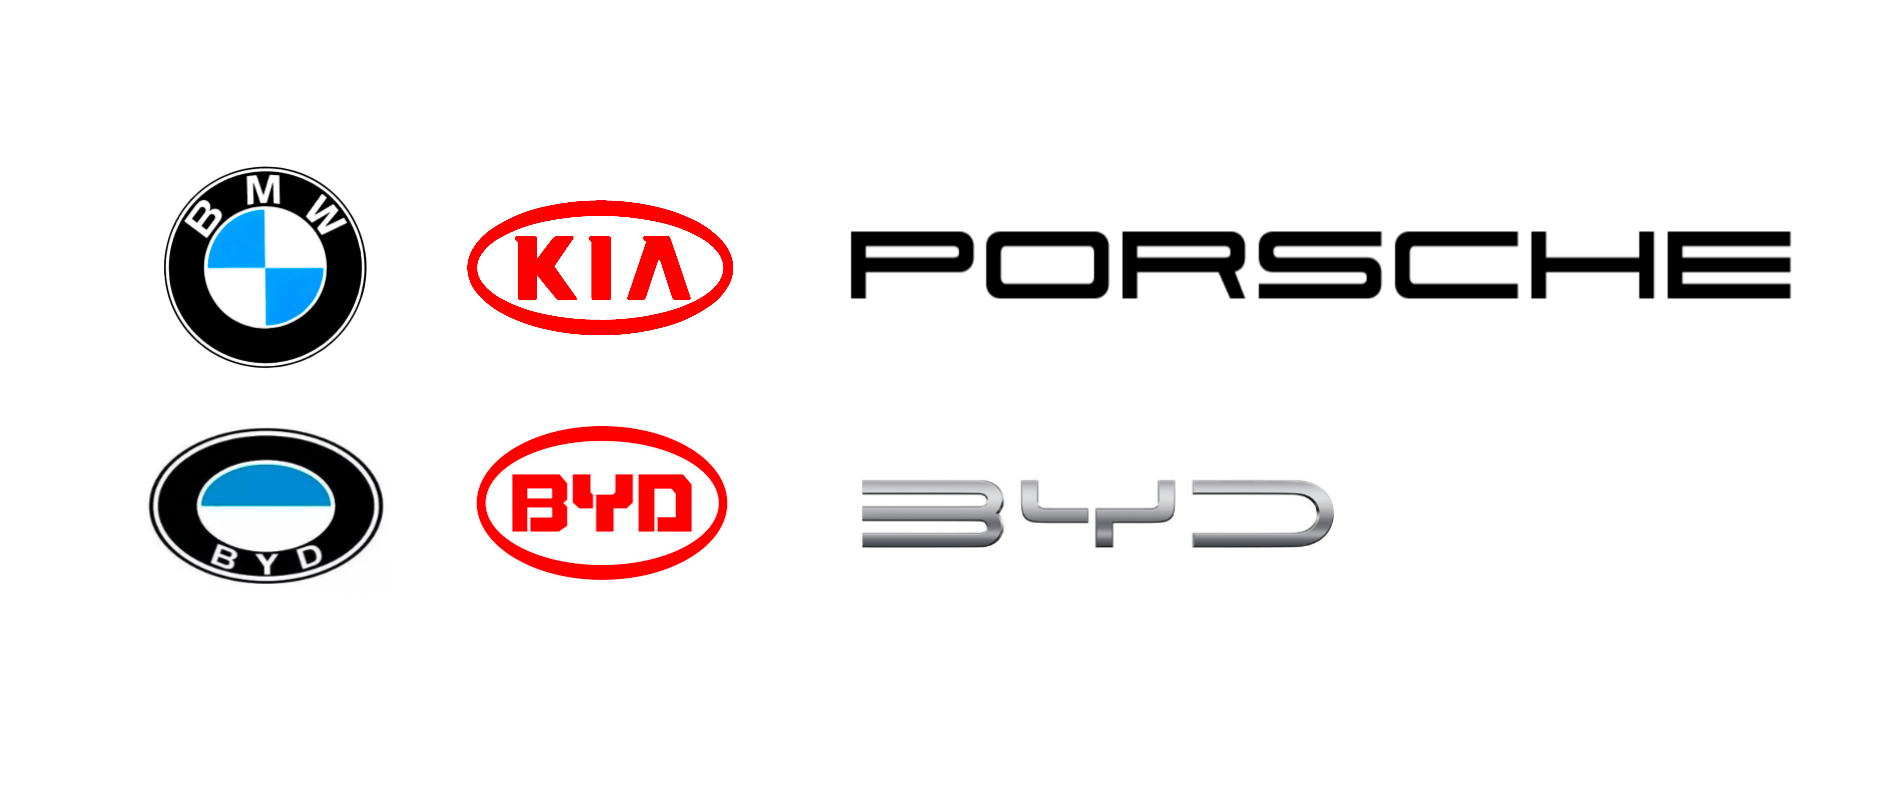 名为"911(参数|图片) porscha"的字体打出来的,下面是比亚迪新logo